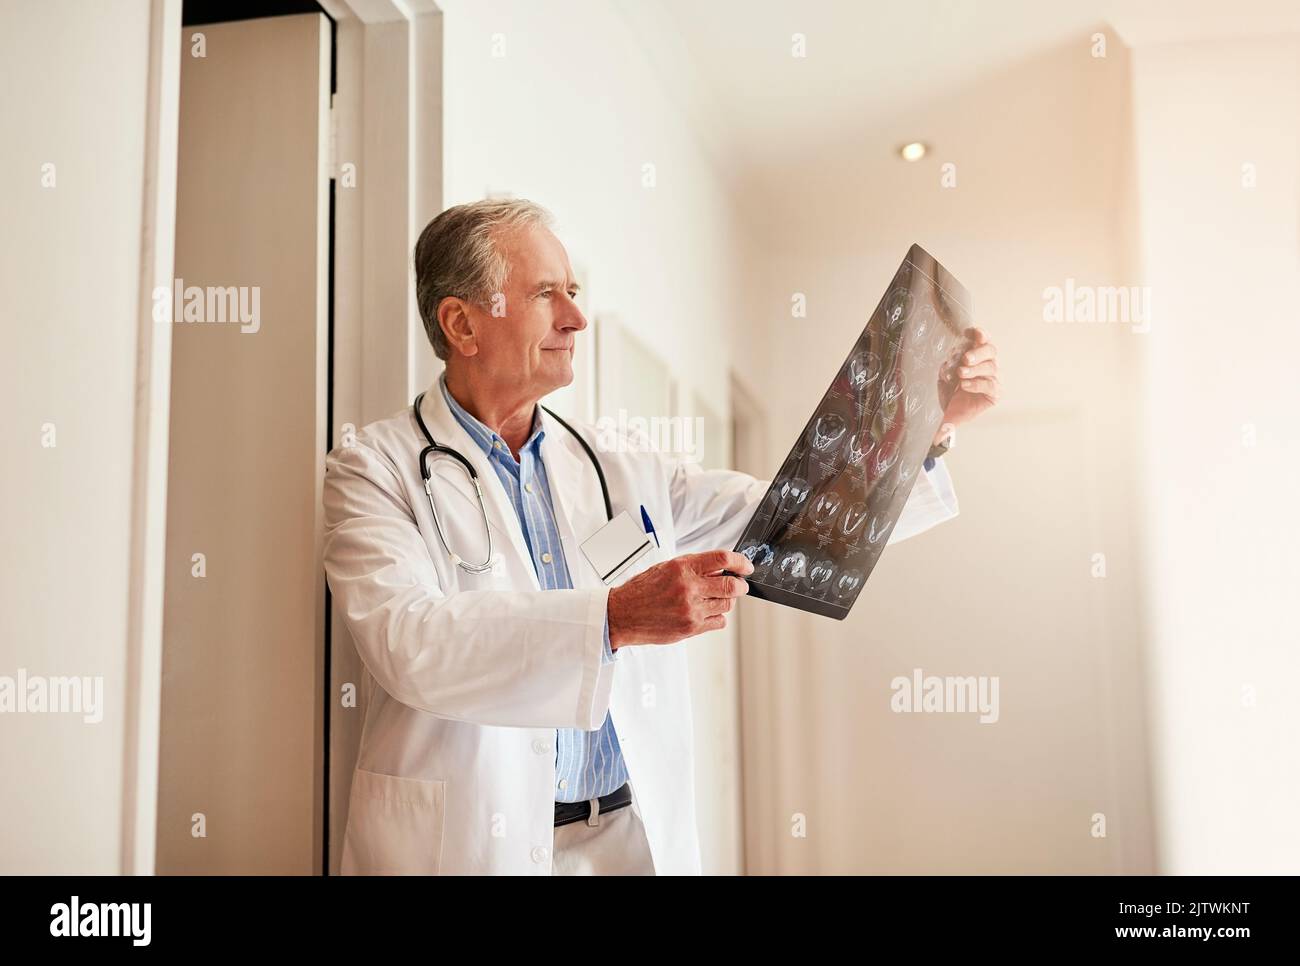 Sì, questo conferma ciò che ho pensato: Un medico maturo che tiene in mano una radiografia per esaminarla. Foto Stock